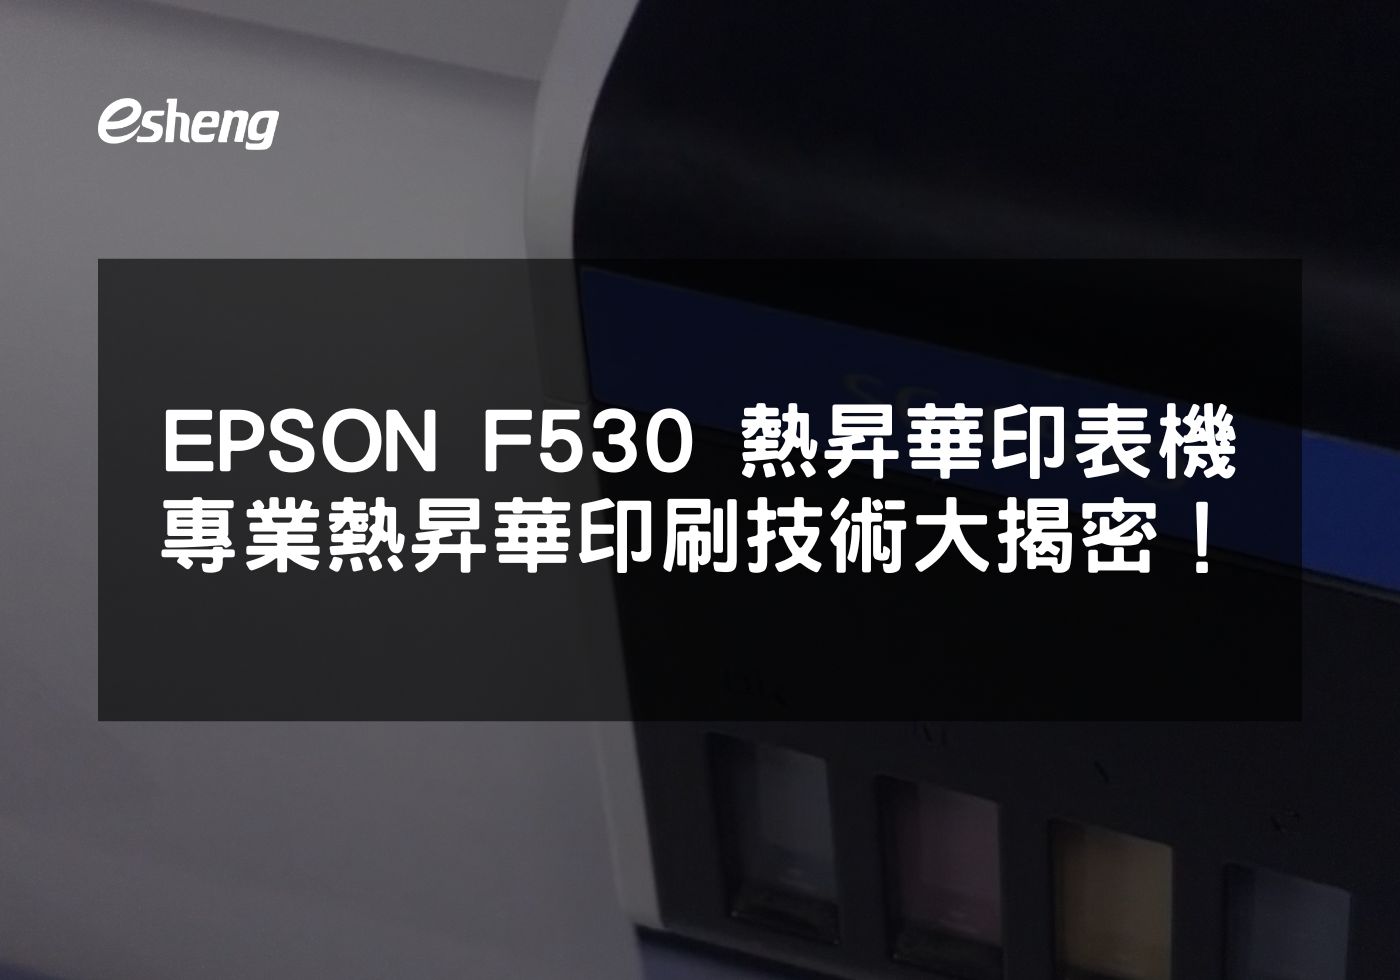 您目前正在查看 EPSON F530 熱昇華印表機 專業熱昇華印刷技術大揭密！